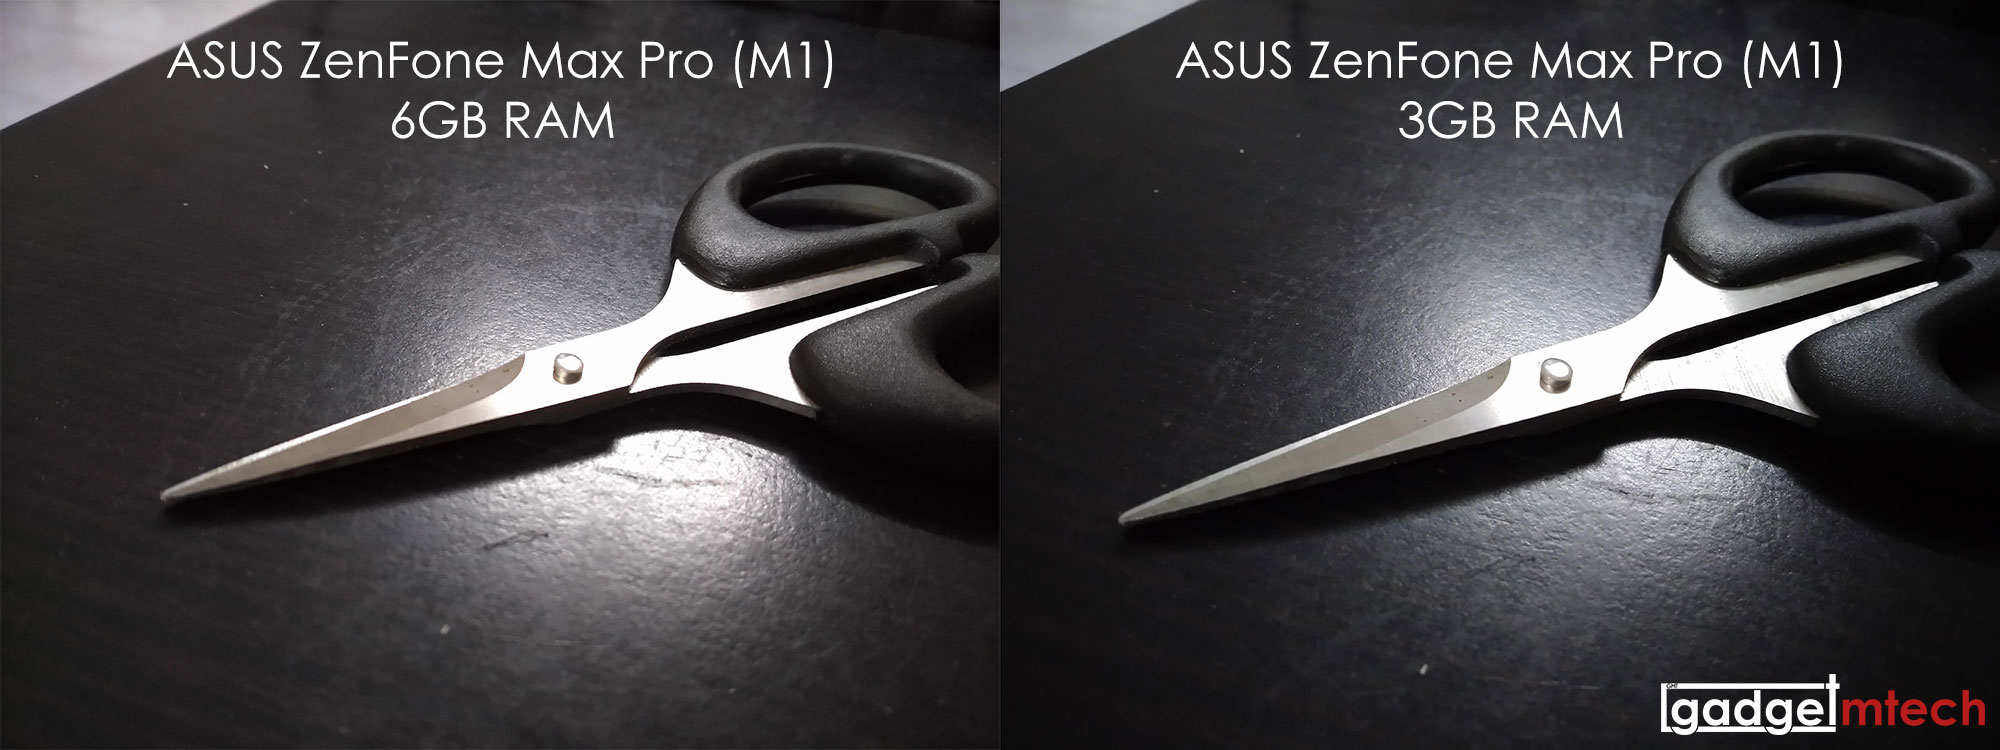 ASUS ZenFone Max Pro (M1) 6GB Review_Camera Sample_Comparison